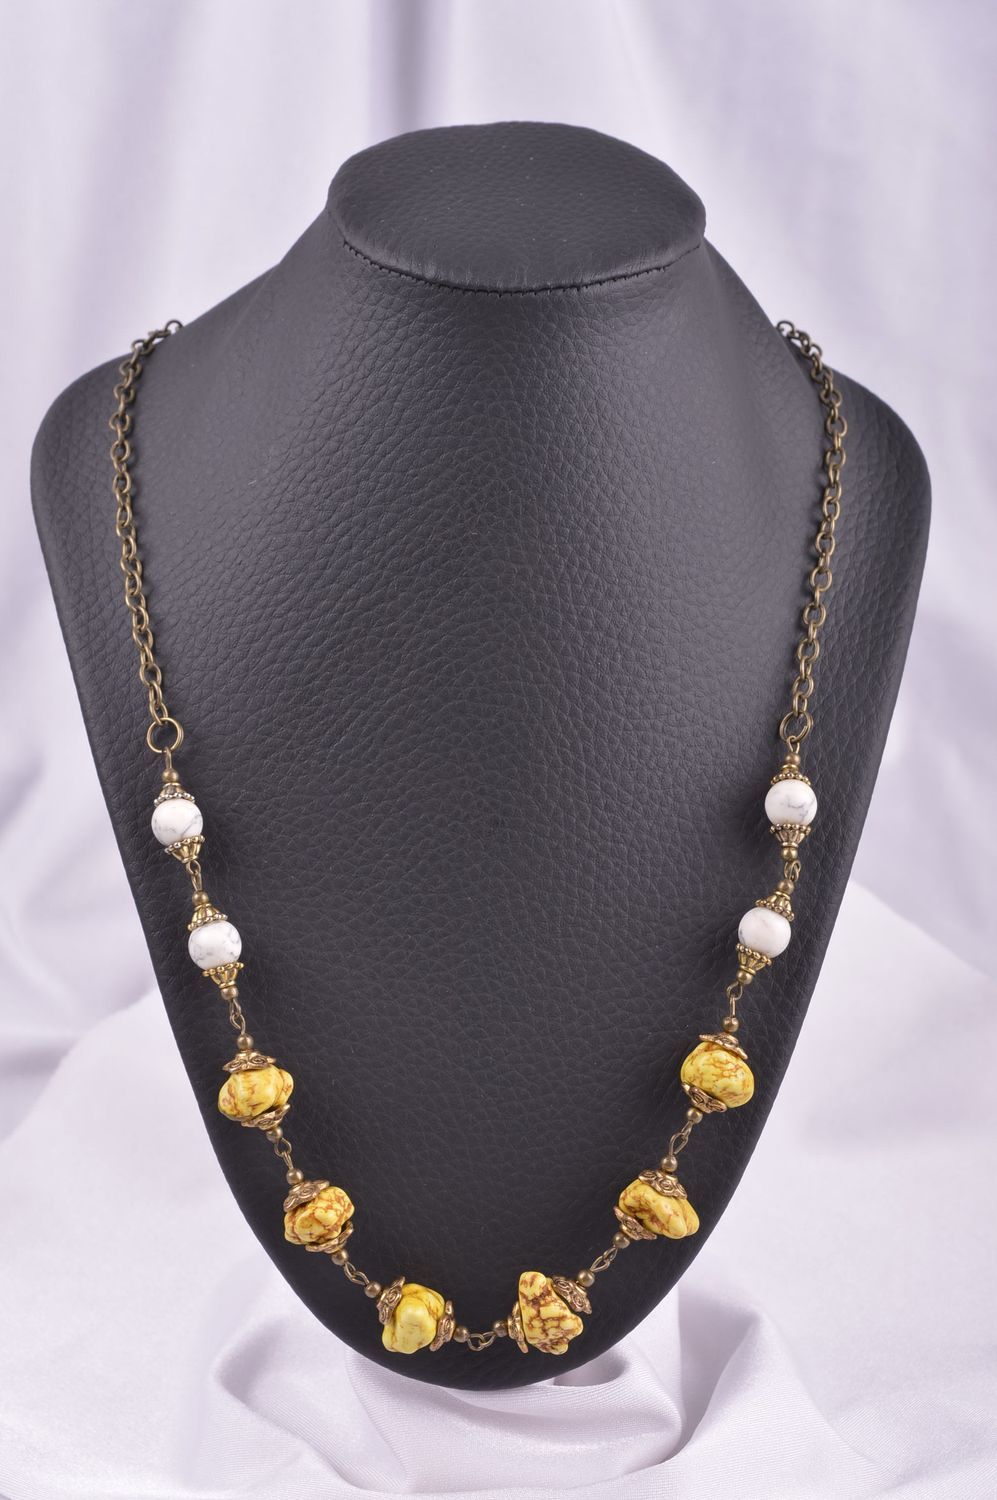 Handmade elegant necklace unusual stylish jewelry elite designer necklace photo 2